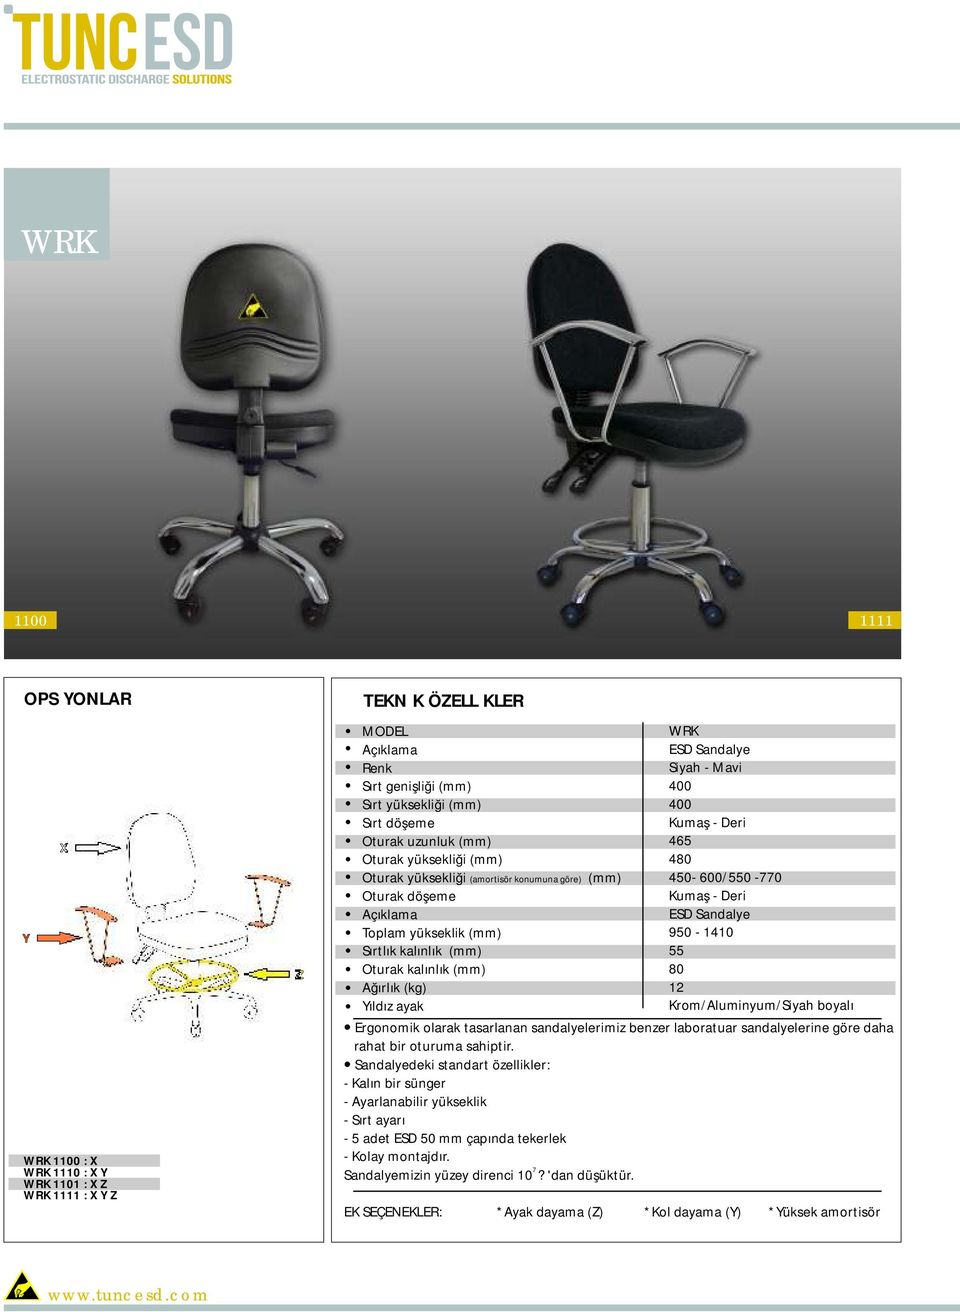 Sandalye Siyah - Mavi 400 400 Kumaş - Deri 465 480 450-600/550-770 Kumaş - Deri ESD Sandalye 950-1410 55 80 12 Krom/Aluminyum/Siyah boyalı Ergonomik olarak tasarlanan sandalyelerimiz benzer